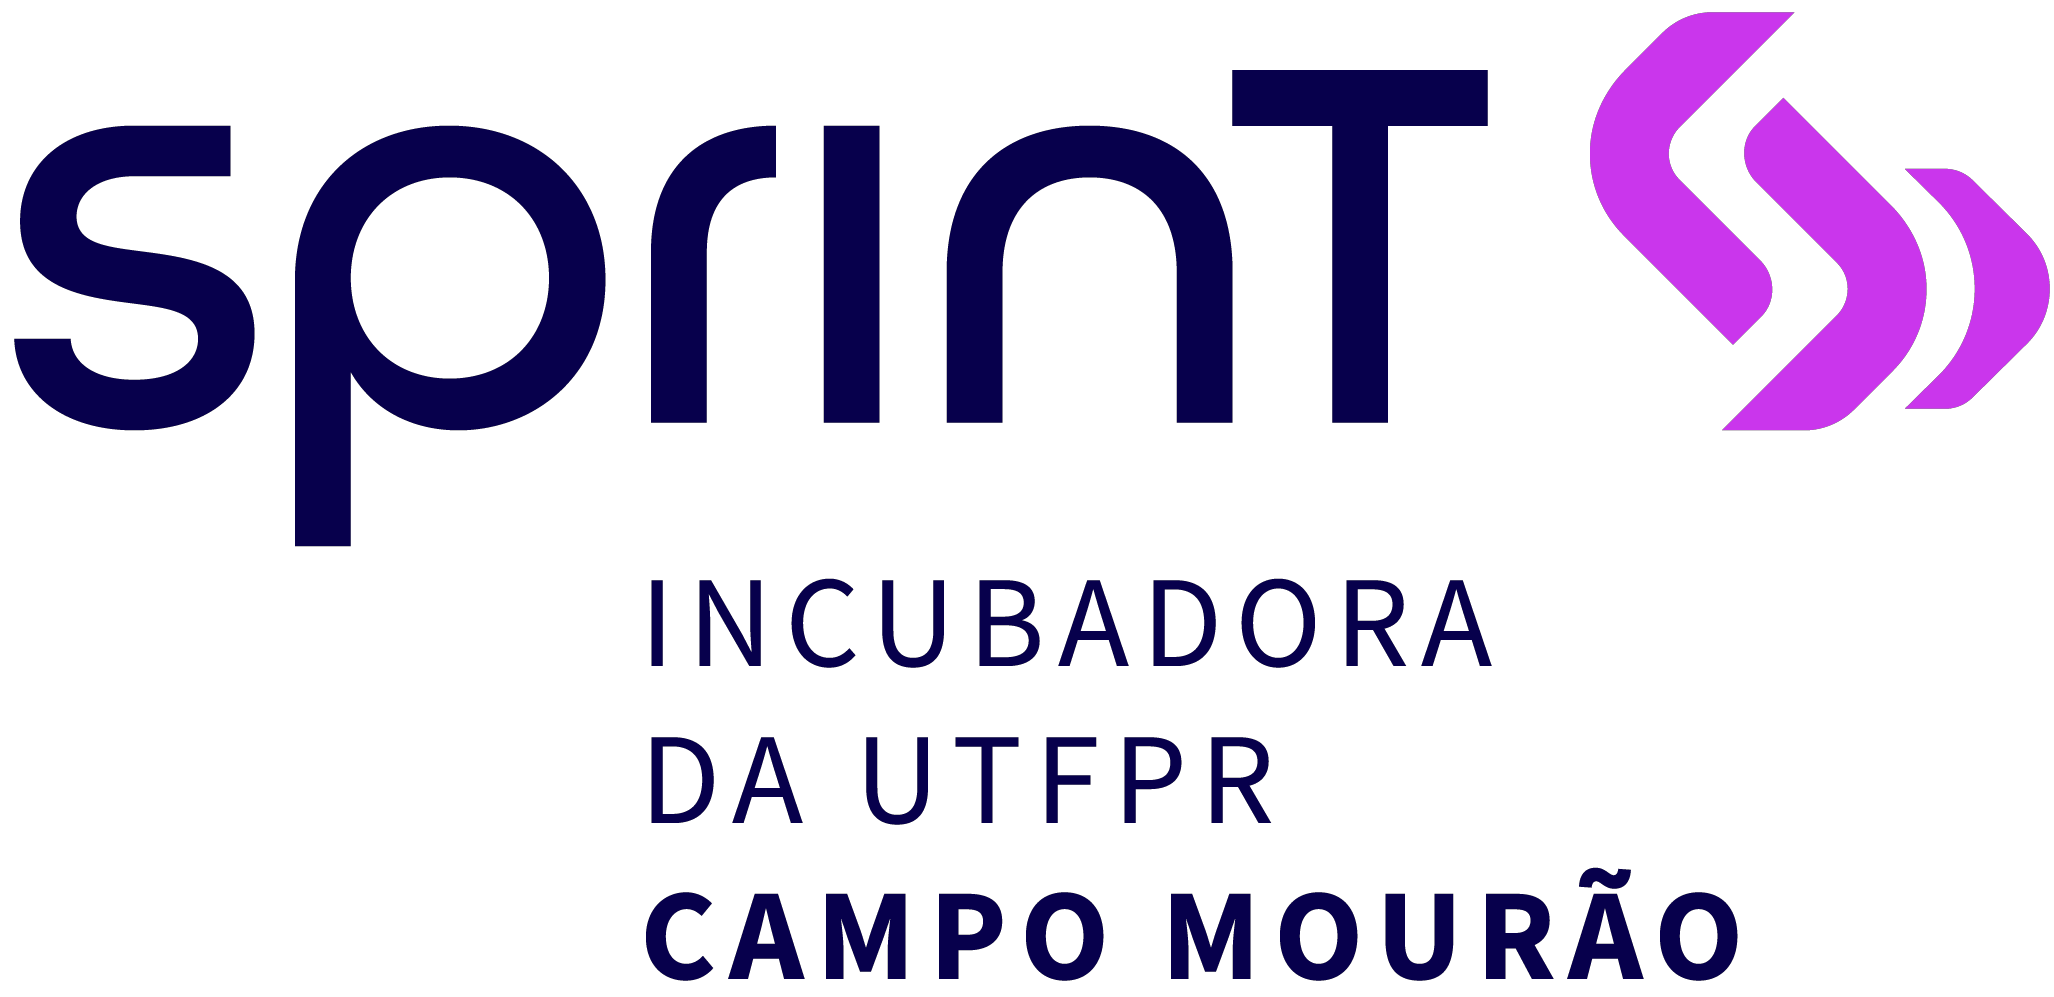 Sprint UTFPR